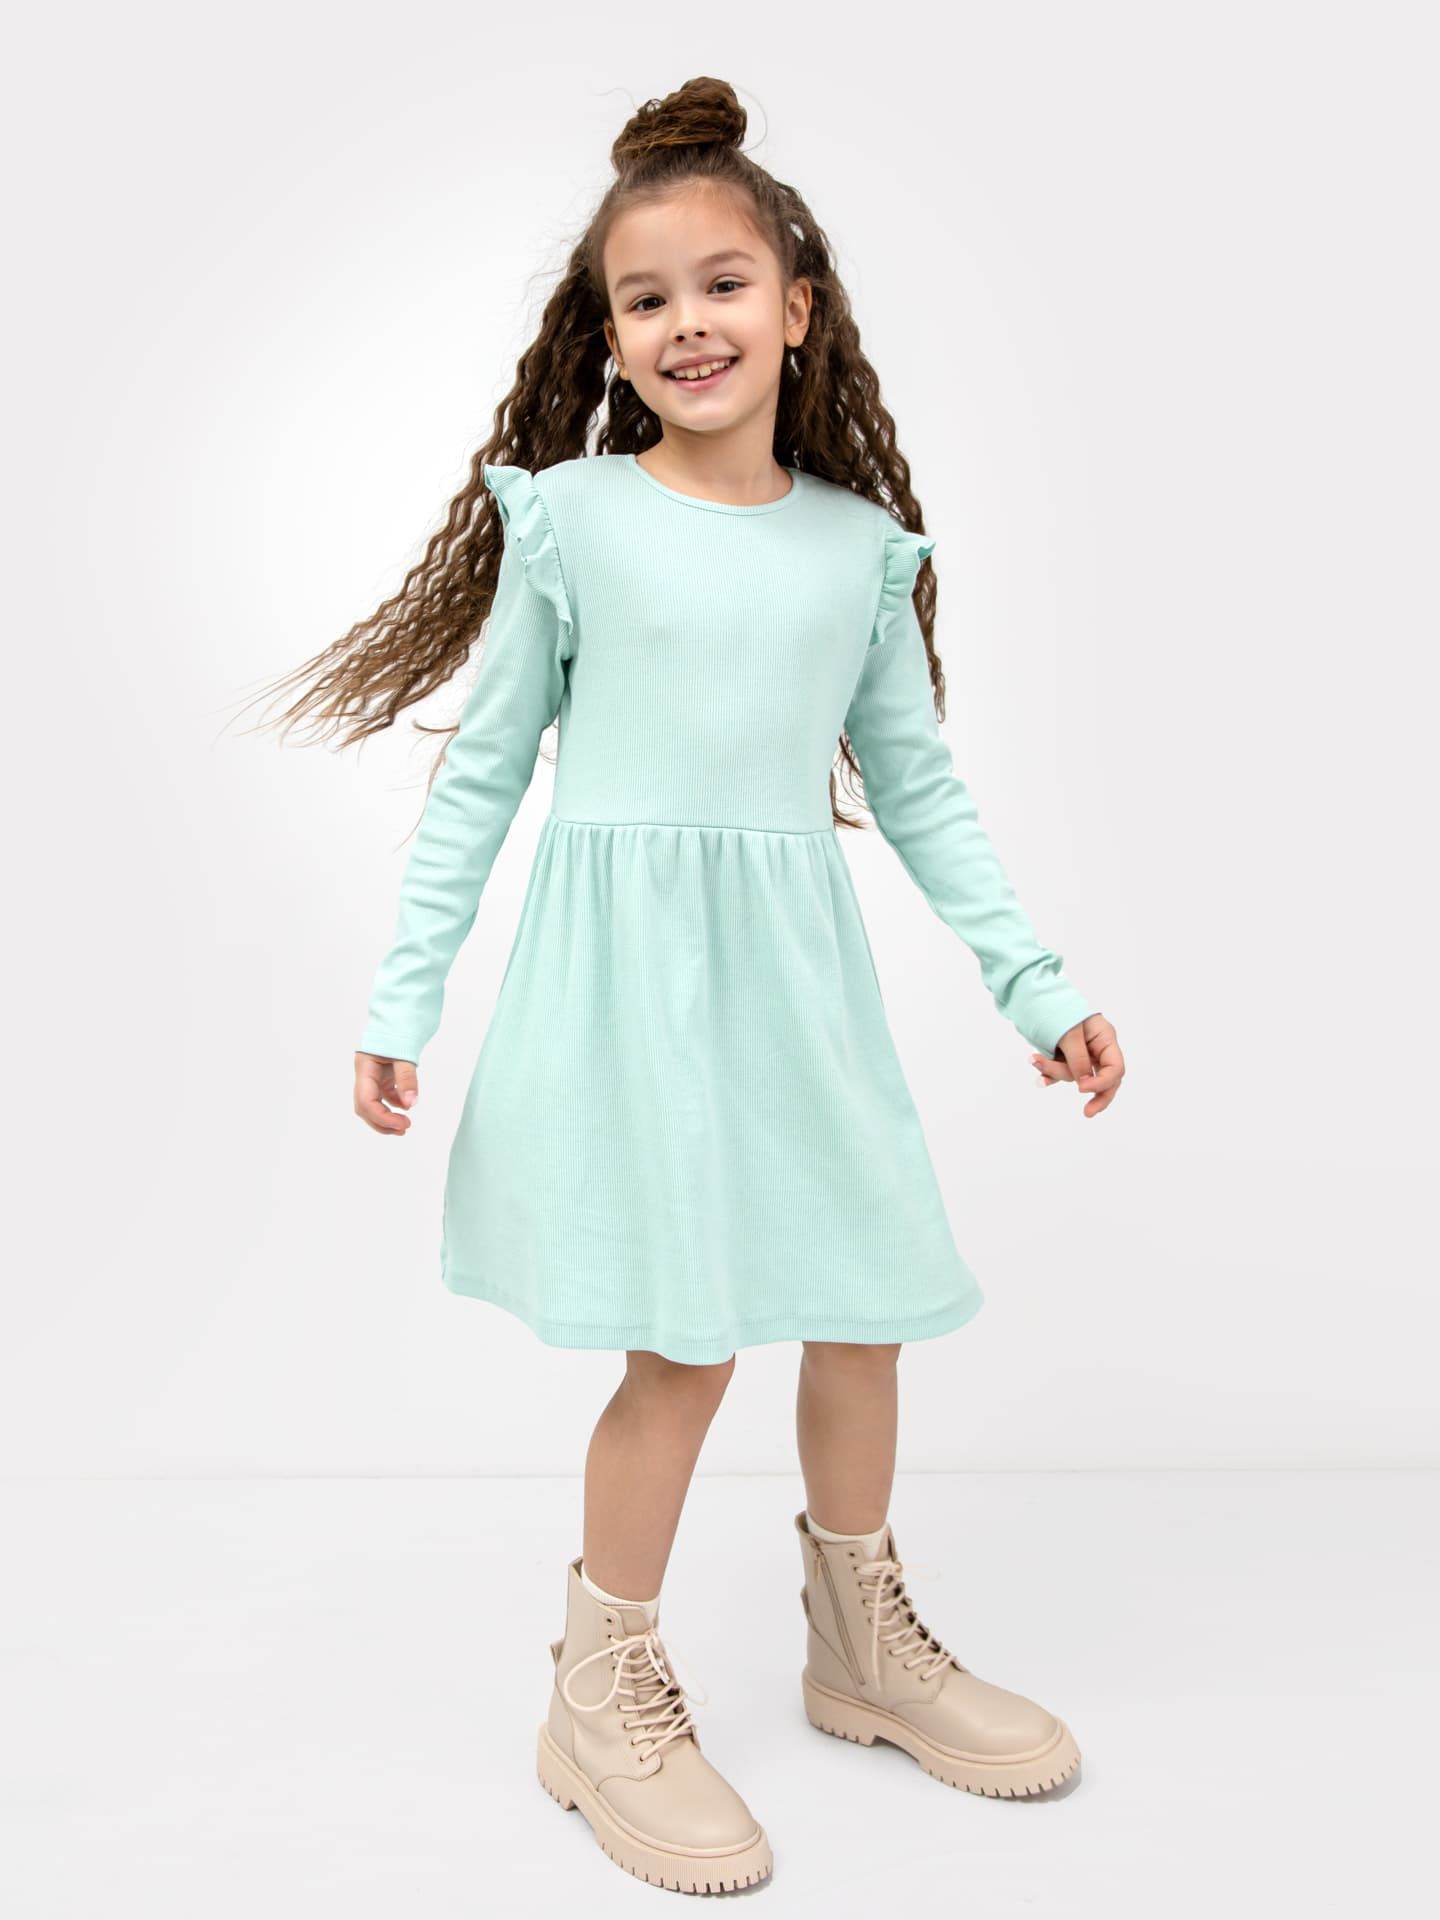 Хлопковое платье в рубчик светло-мятного цвета для девочек